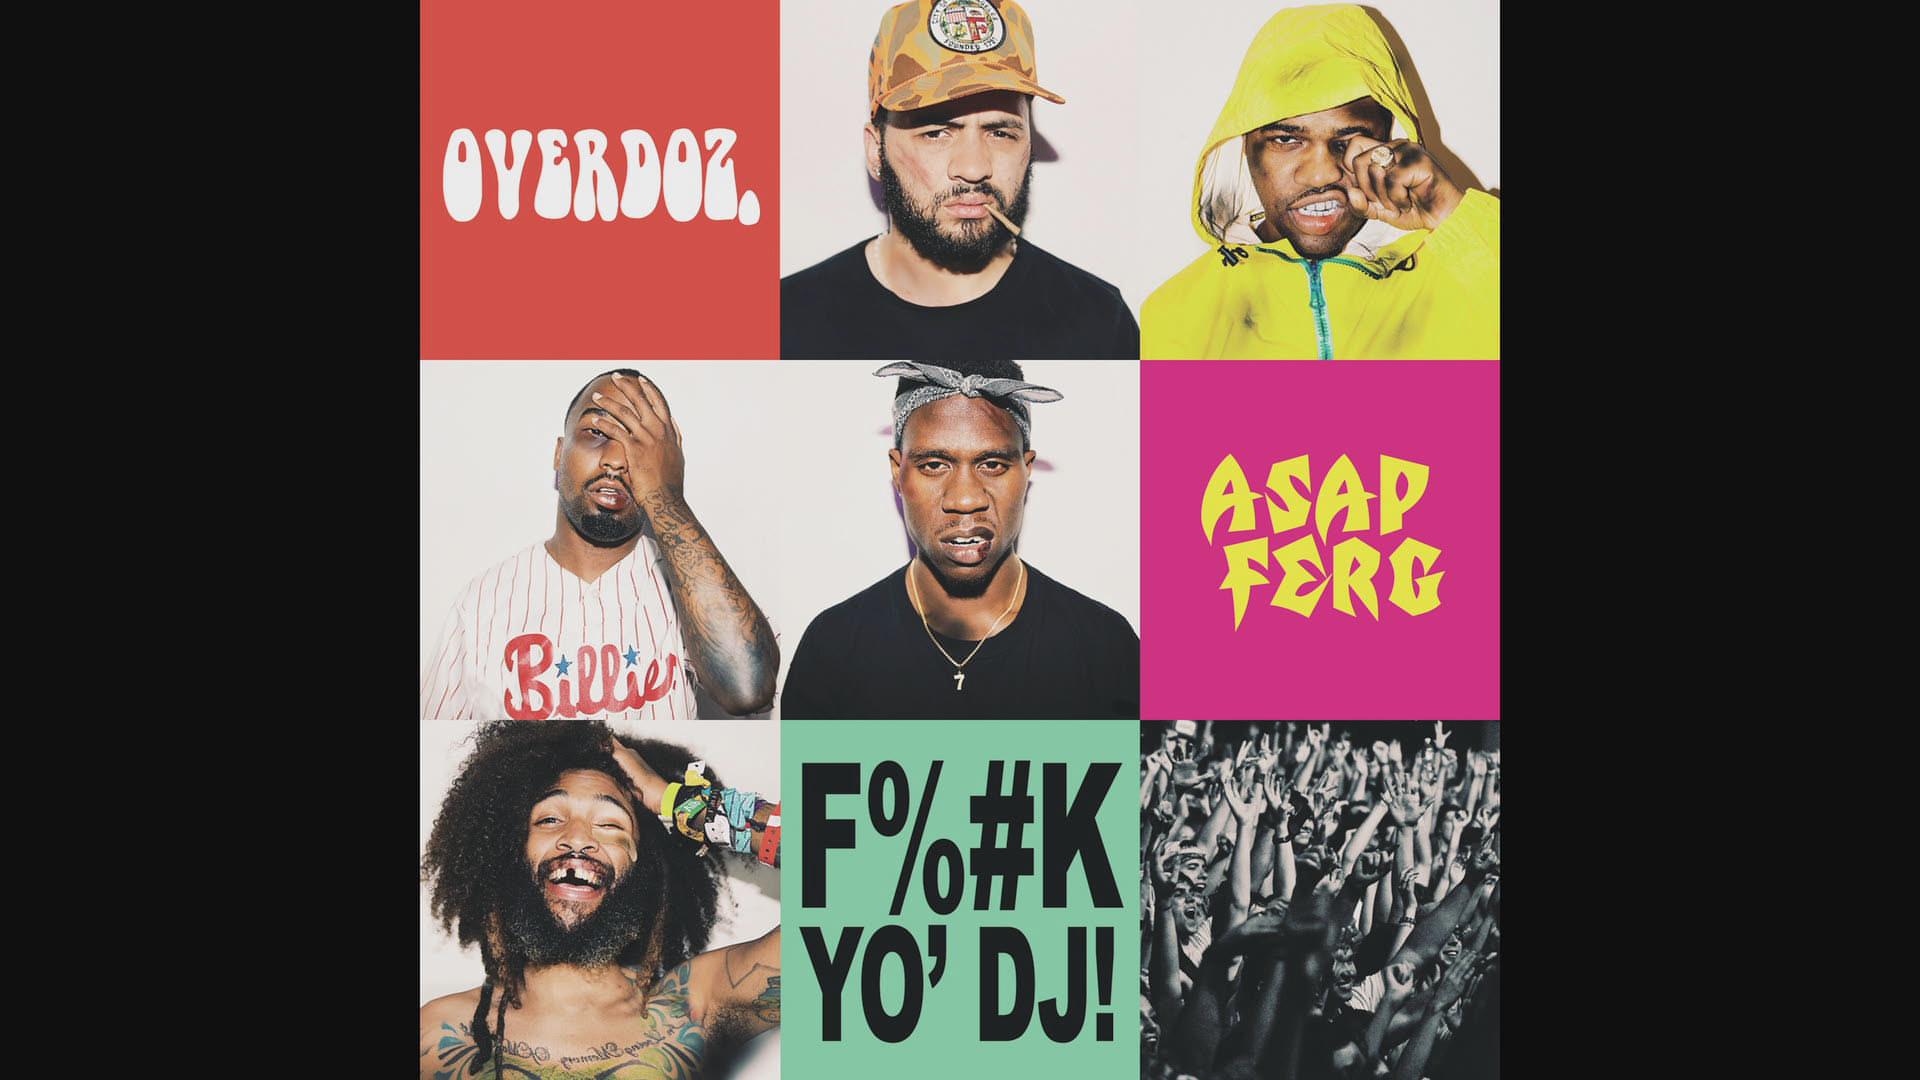 Overdoz. - F**k Yo DJ (Audio)